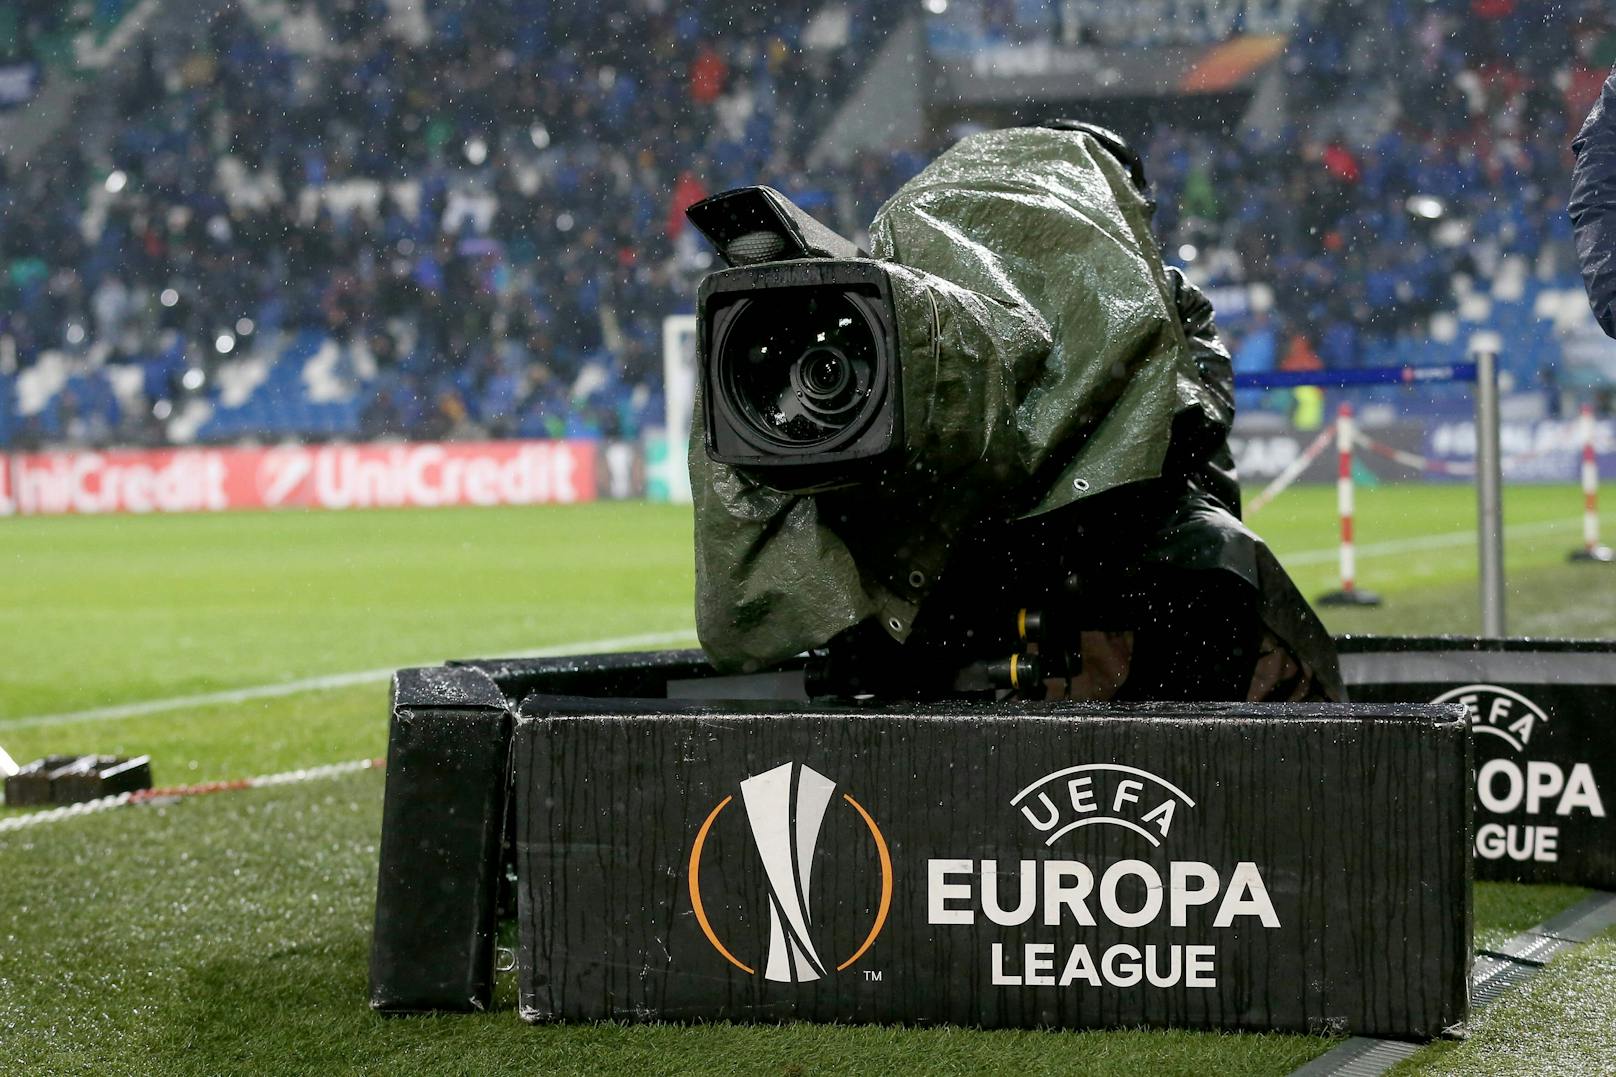 Die Europa League kehrt in den ORF zurück